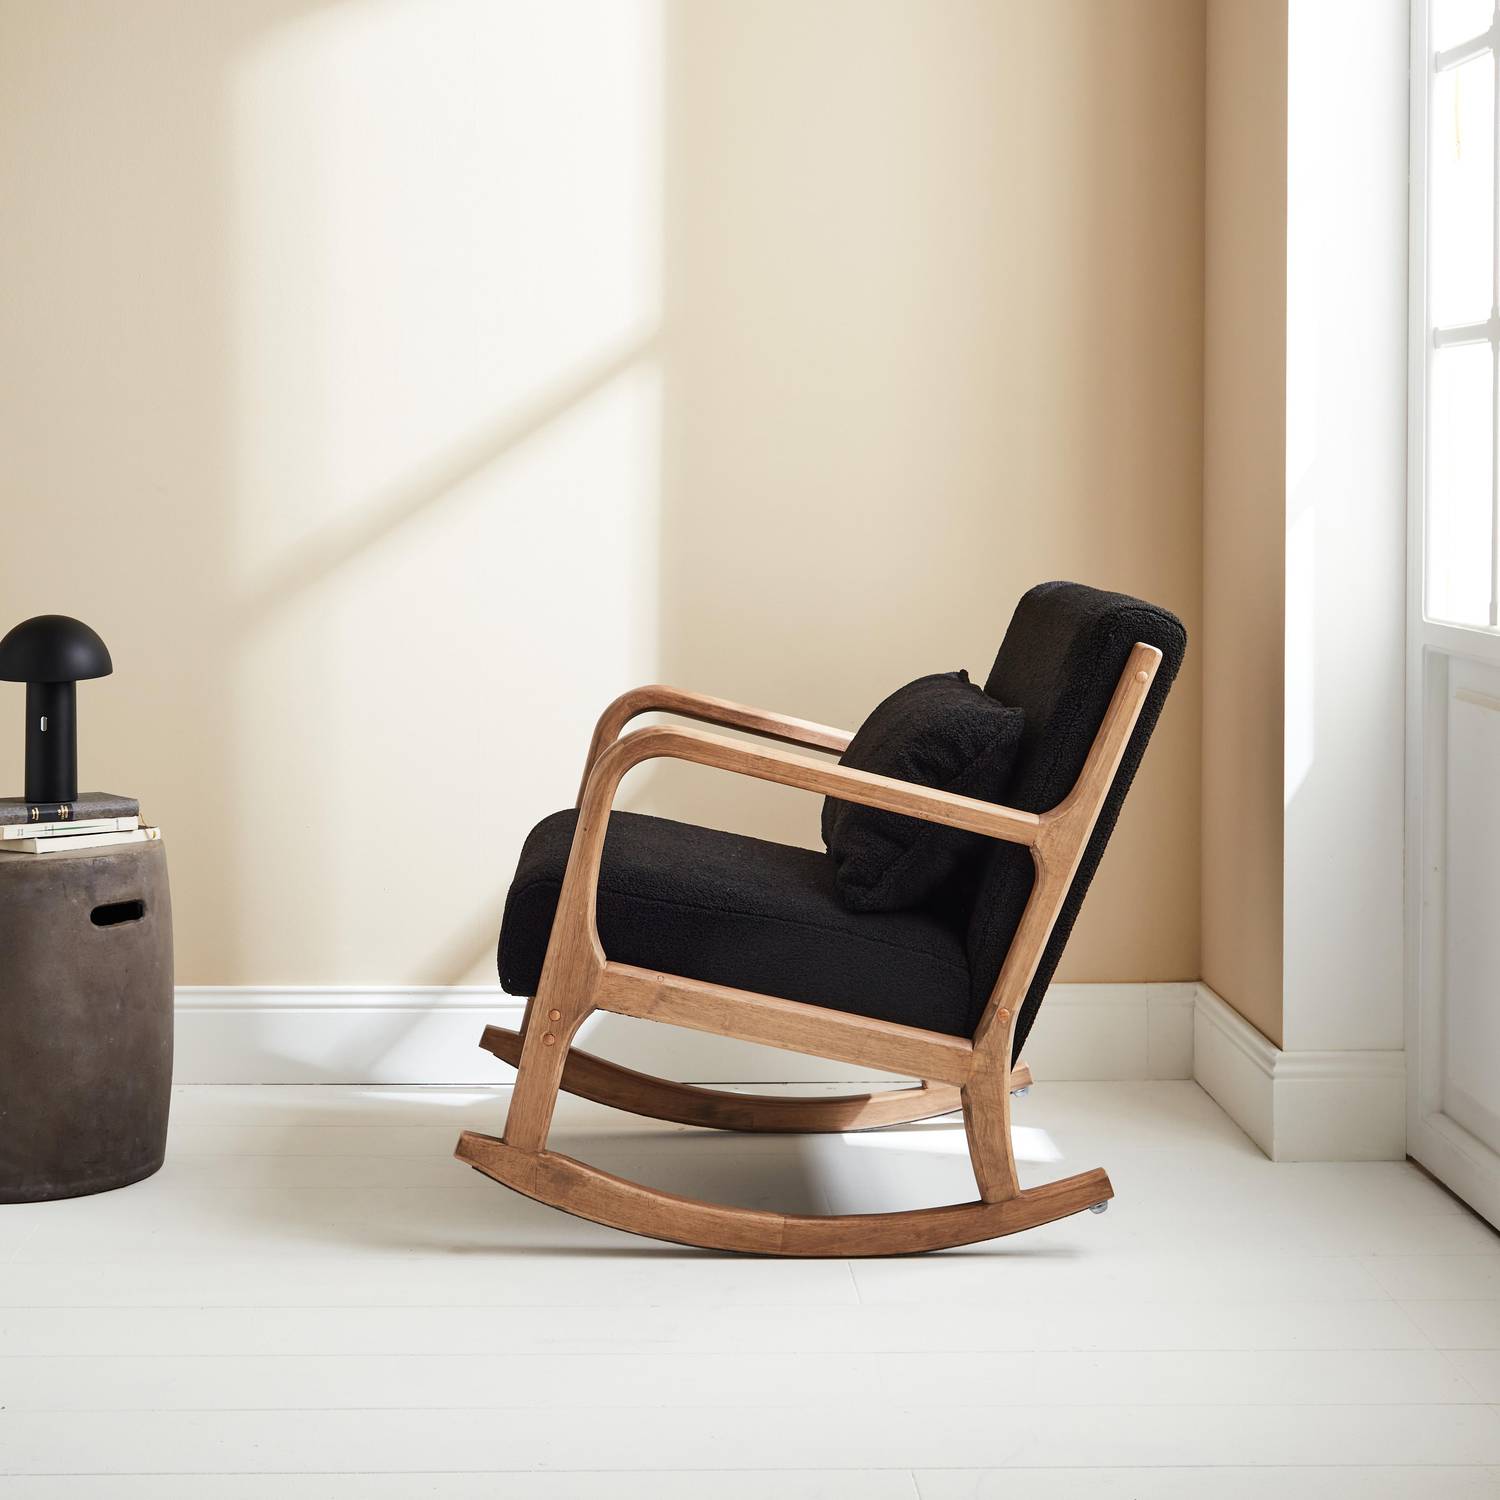 Fauteuil à bascule design en bois et tissu, bouclettes noires, 1 place, rocking chair scandinave Photo2